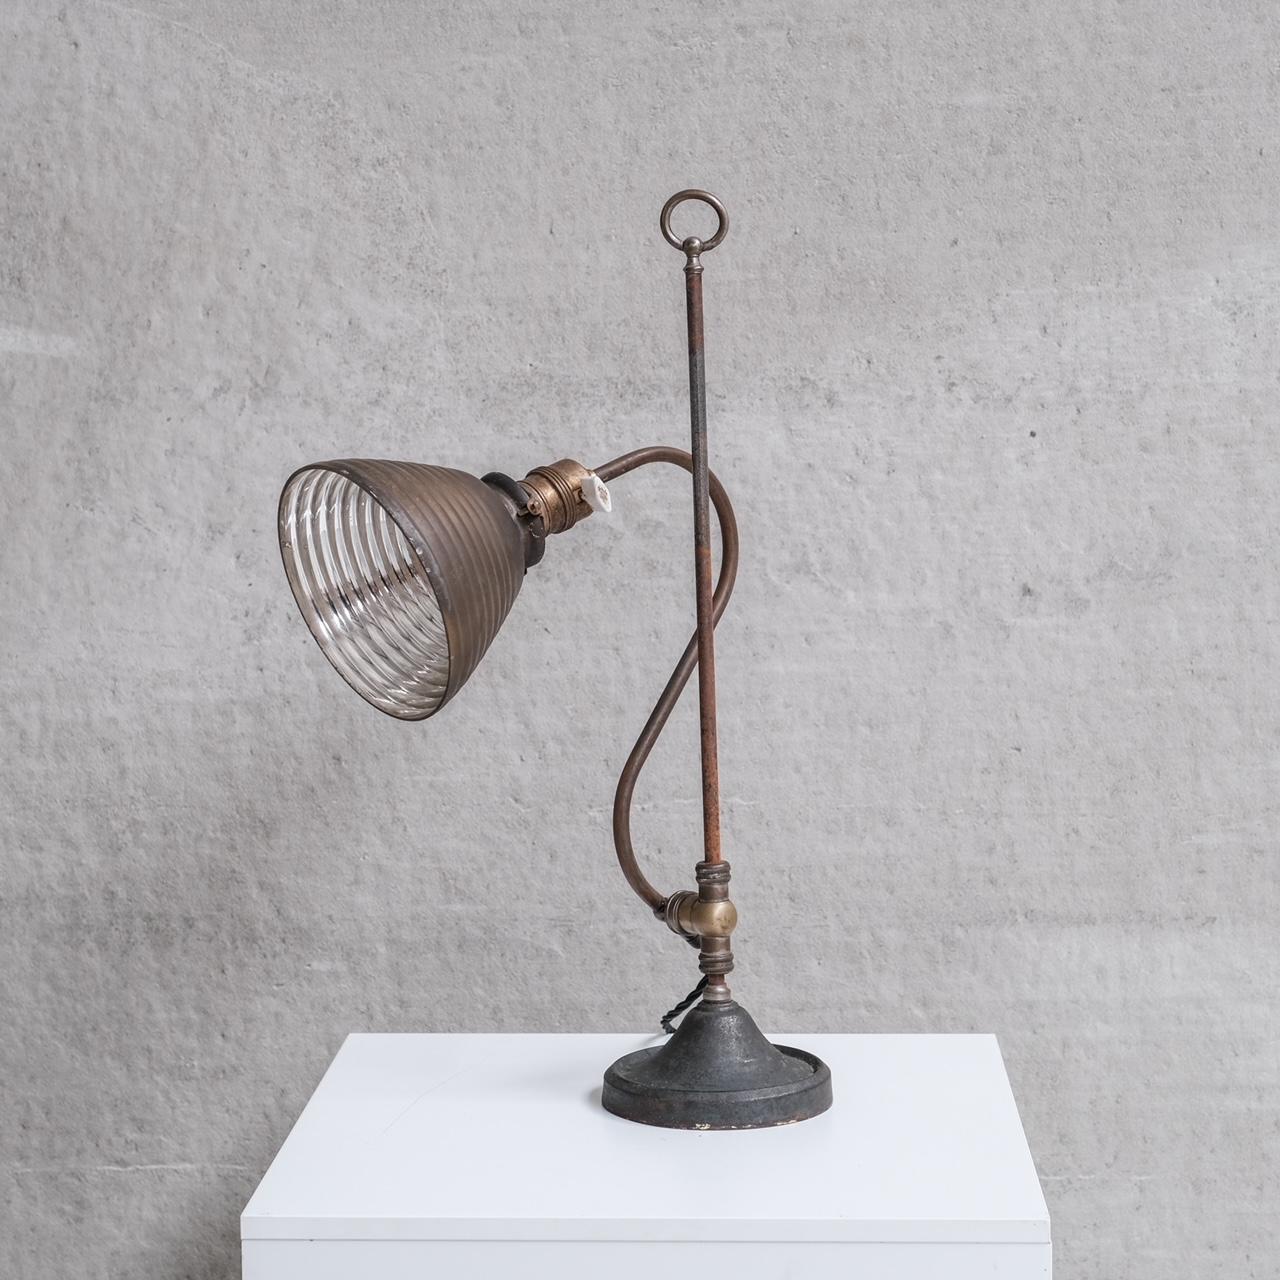 Eine ungewöhnliche verstellbare Tischlampe.

Holland, ca. 1920er Jahre.   

Reflektierender Schirm aus Quecksilberglas, befestigt an einem Messingstiel, beschwert durch einen Eisenfuß.

Ein einzigartiges Stück, das sich ideal für einen besonderen